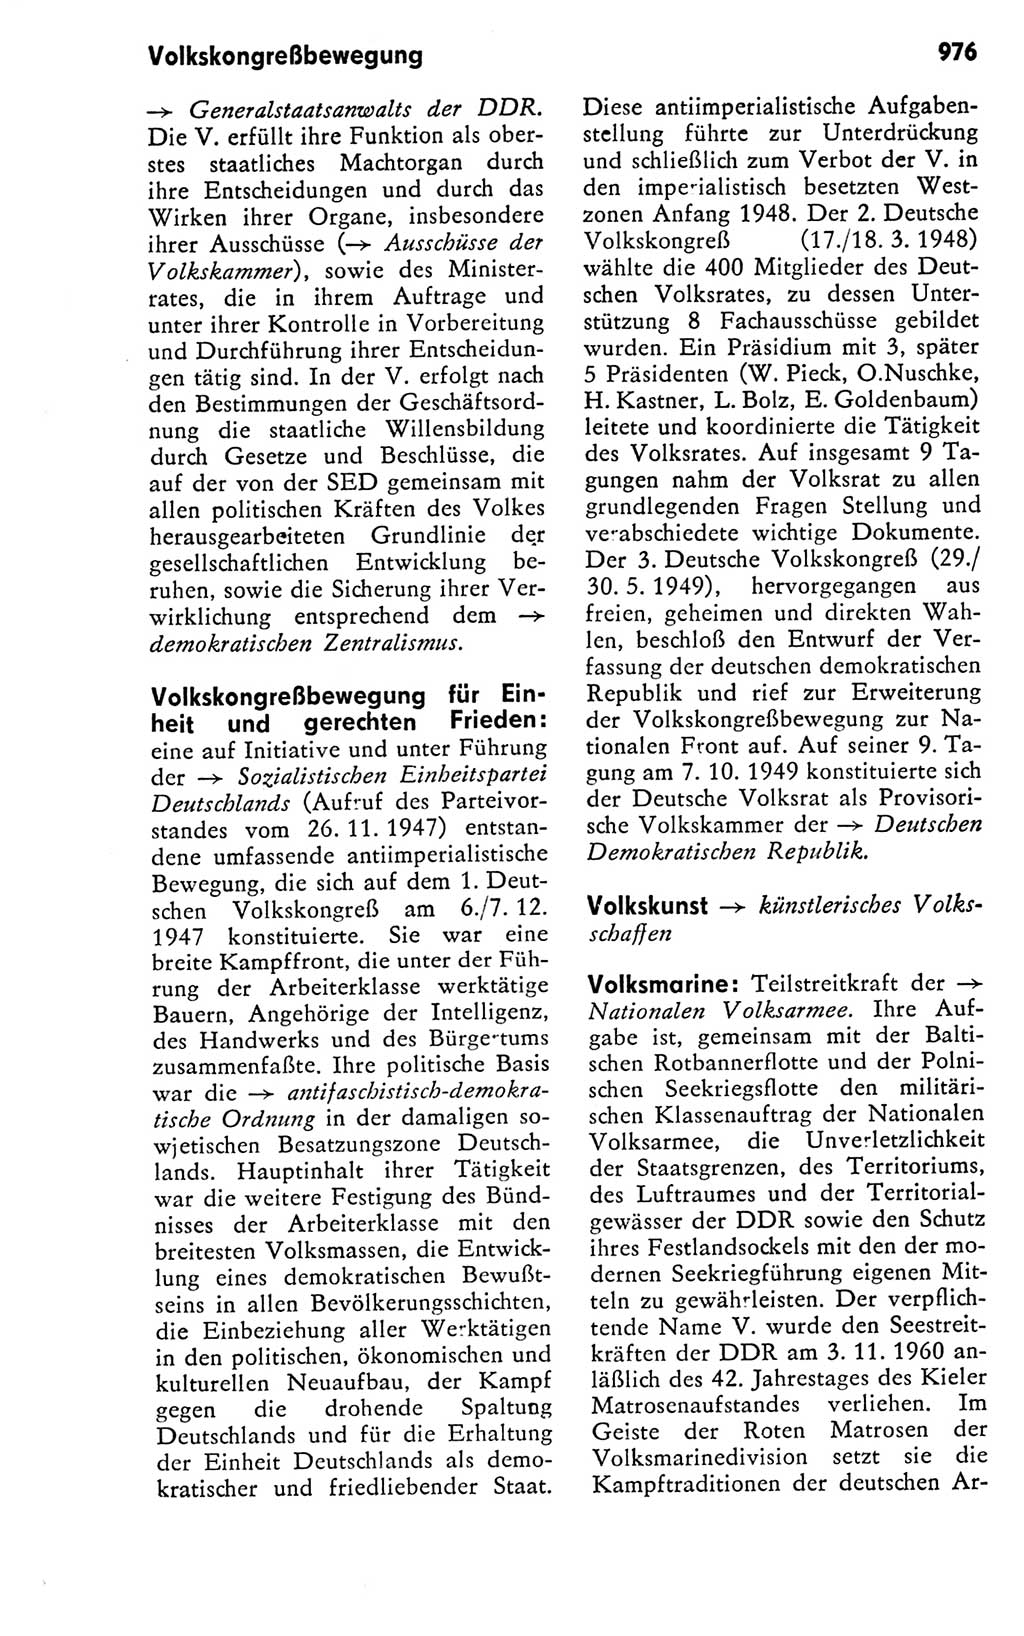 Kleines politisches Wörterbuch [Deutsche Demokratische Republik (DDR)] 1978, Seite 976 (Kl. pol. Wb. DDR 1978, S. 976)